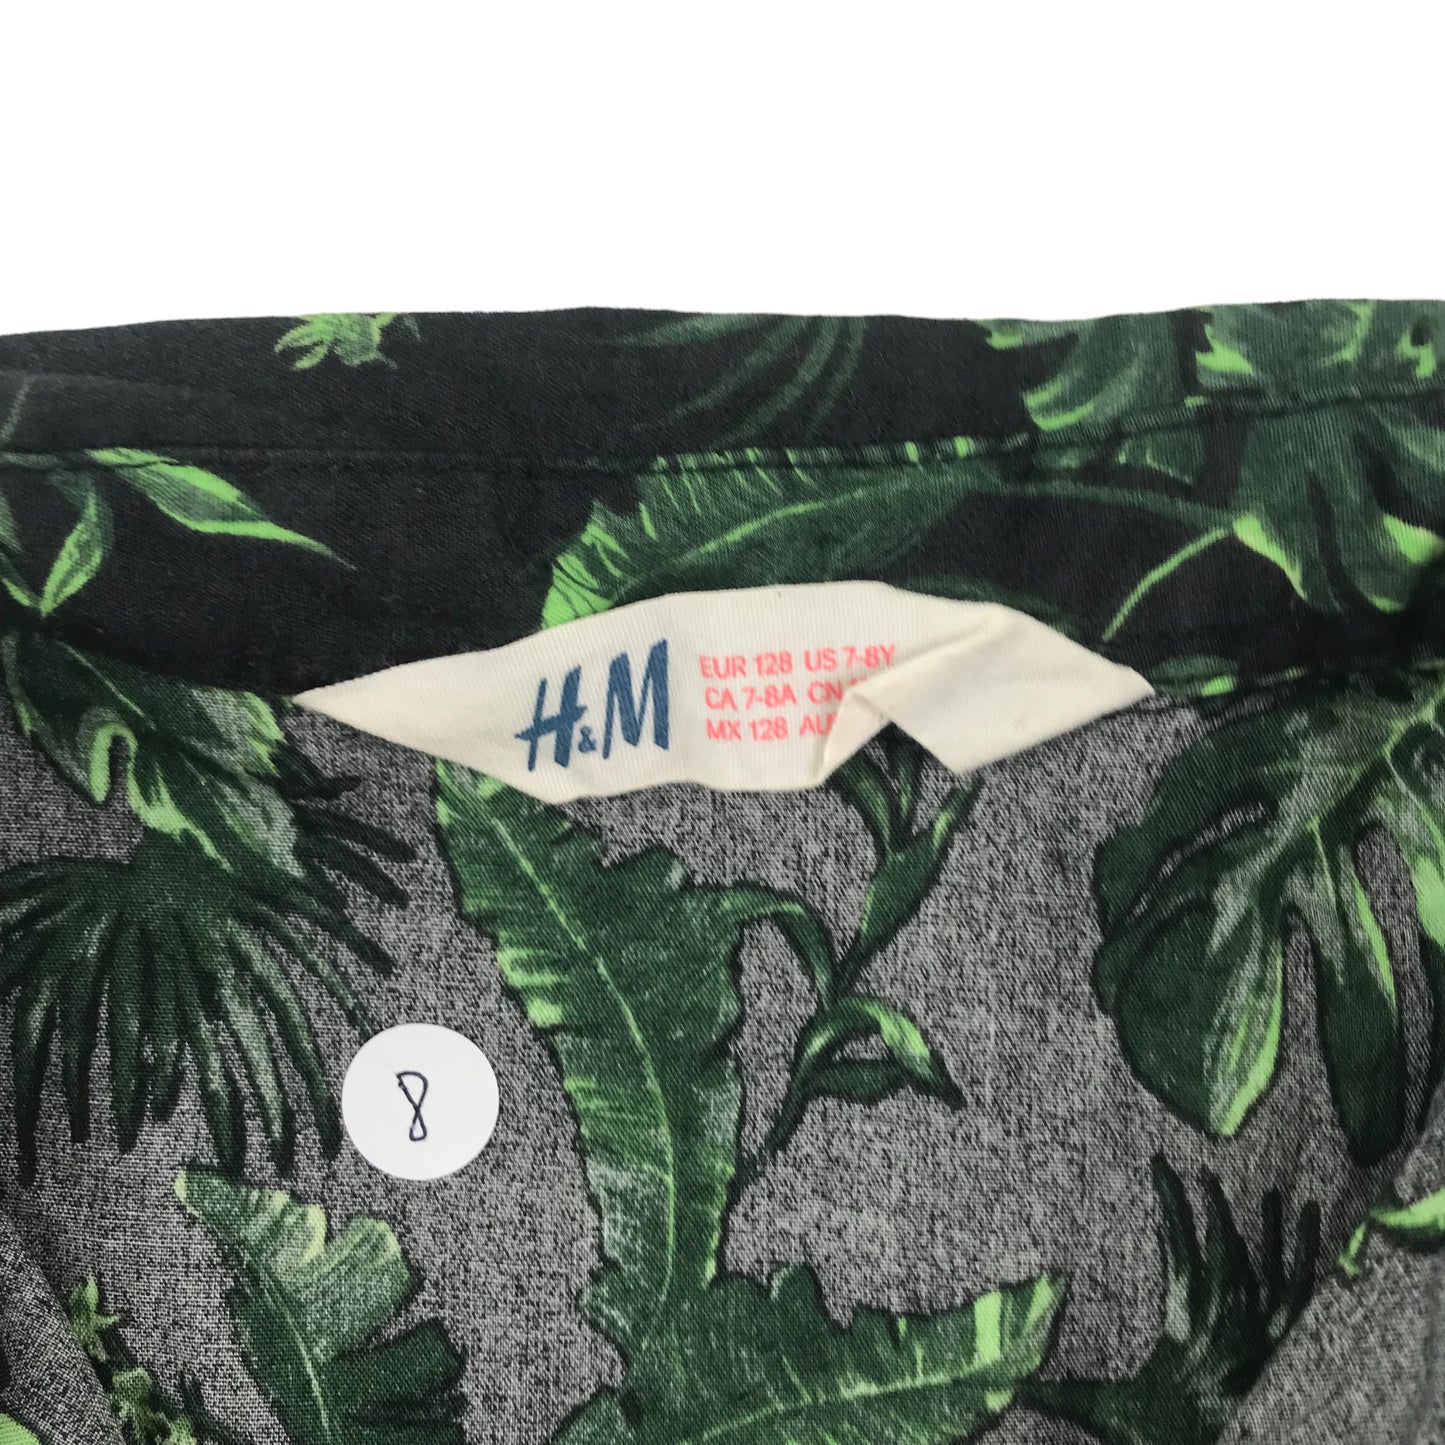 H&M Shirt Age 7-8 Green Leafy Print Pattern Cotton